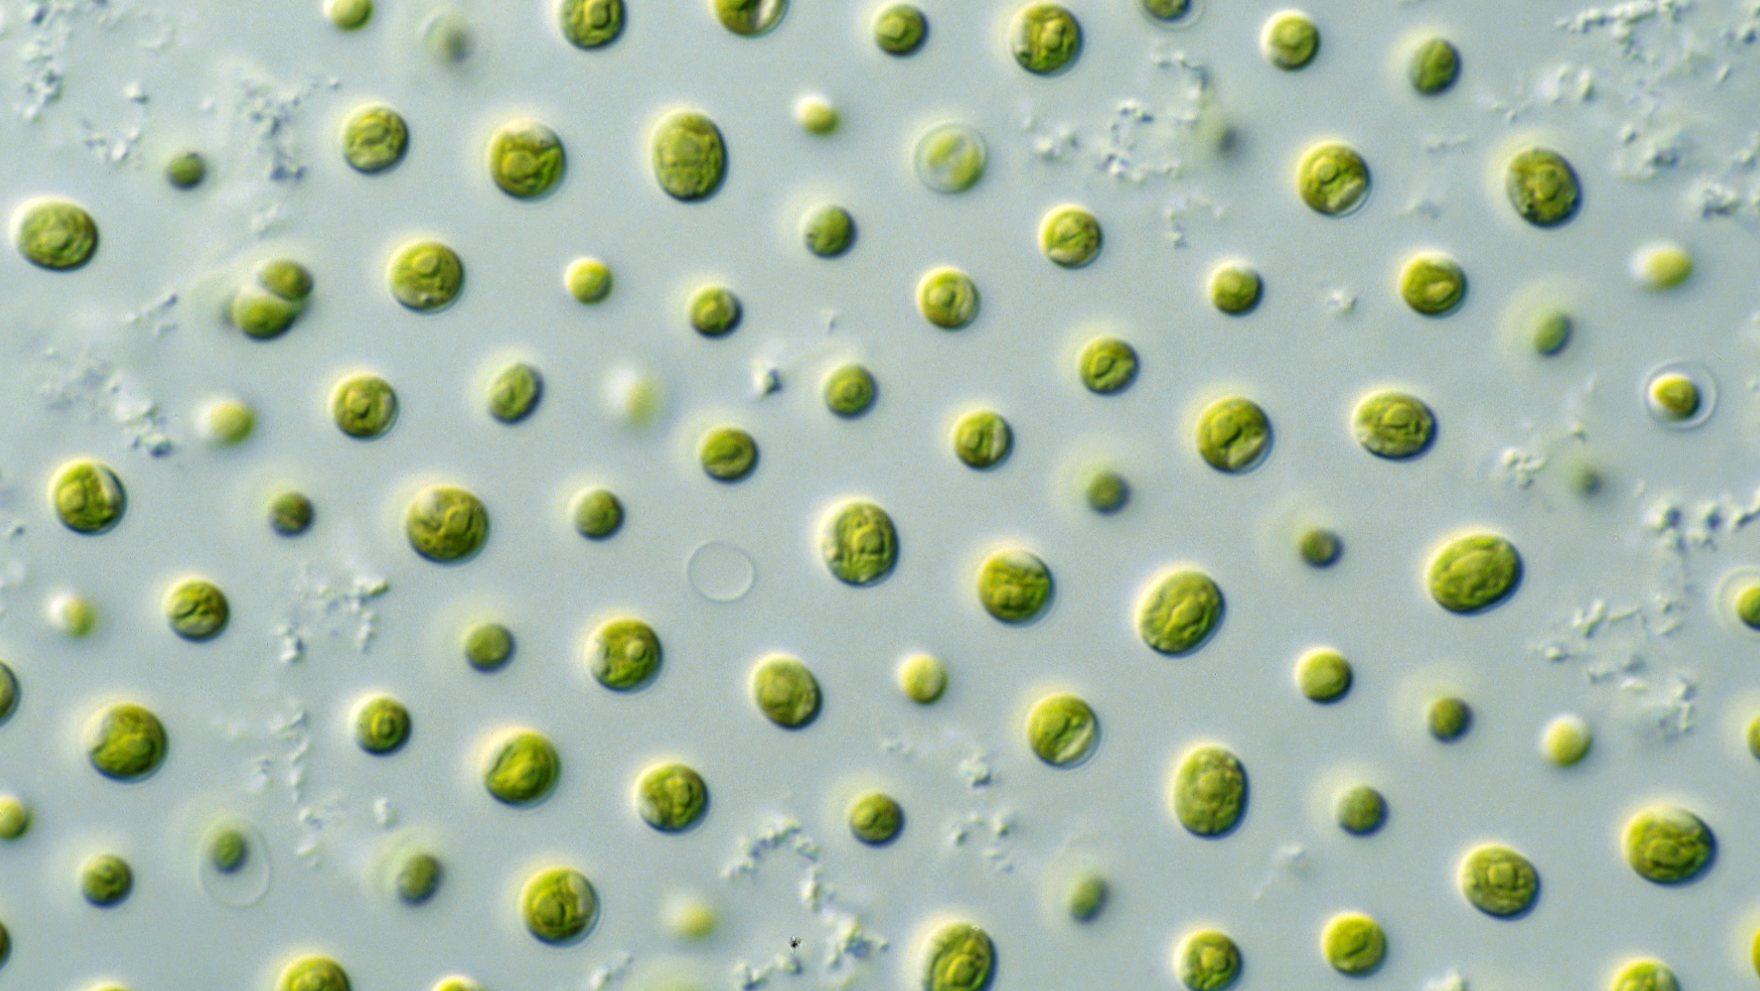 Microalgas são capazes de produzir “mais oxigénio do que todas as outras plantas terrestres”, segundo Nuno Coelho